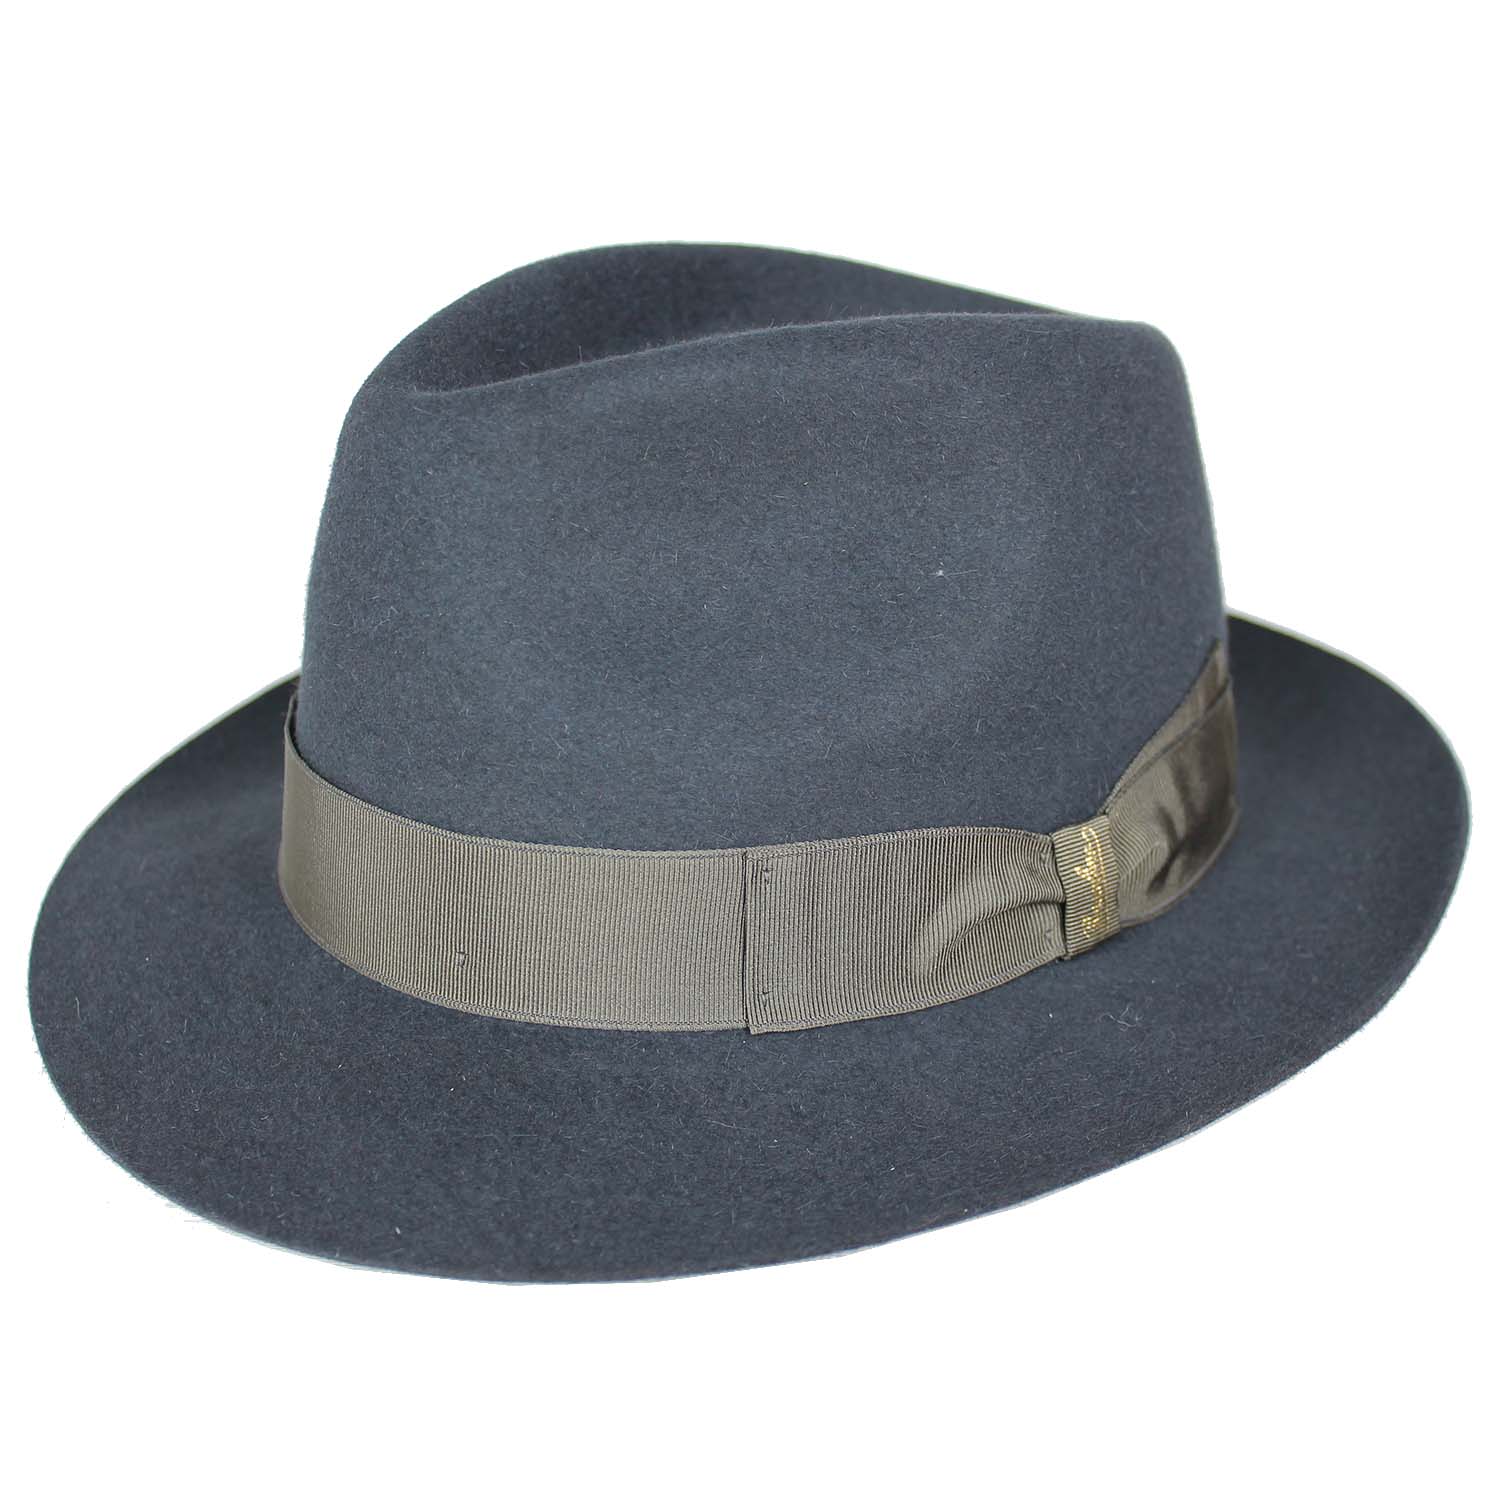 cappello-marchio-borsalino-modello-fedora-in-feltro-di-lepre-colore-blu-grigio